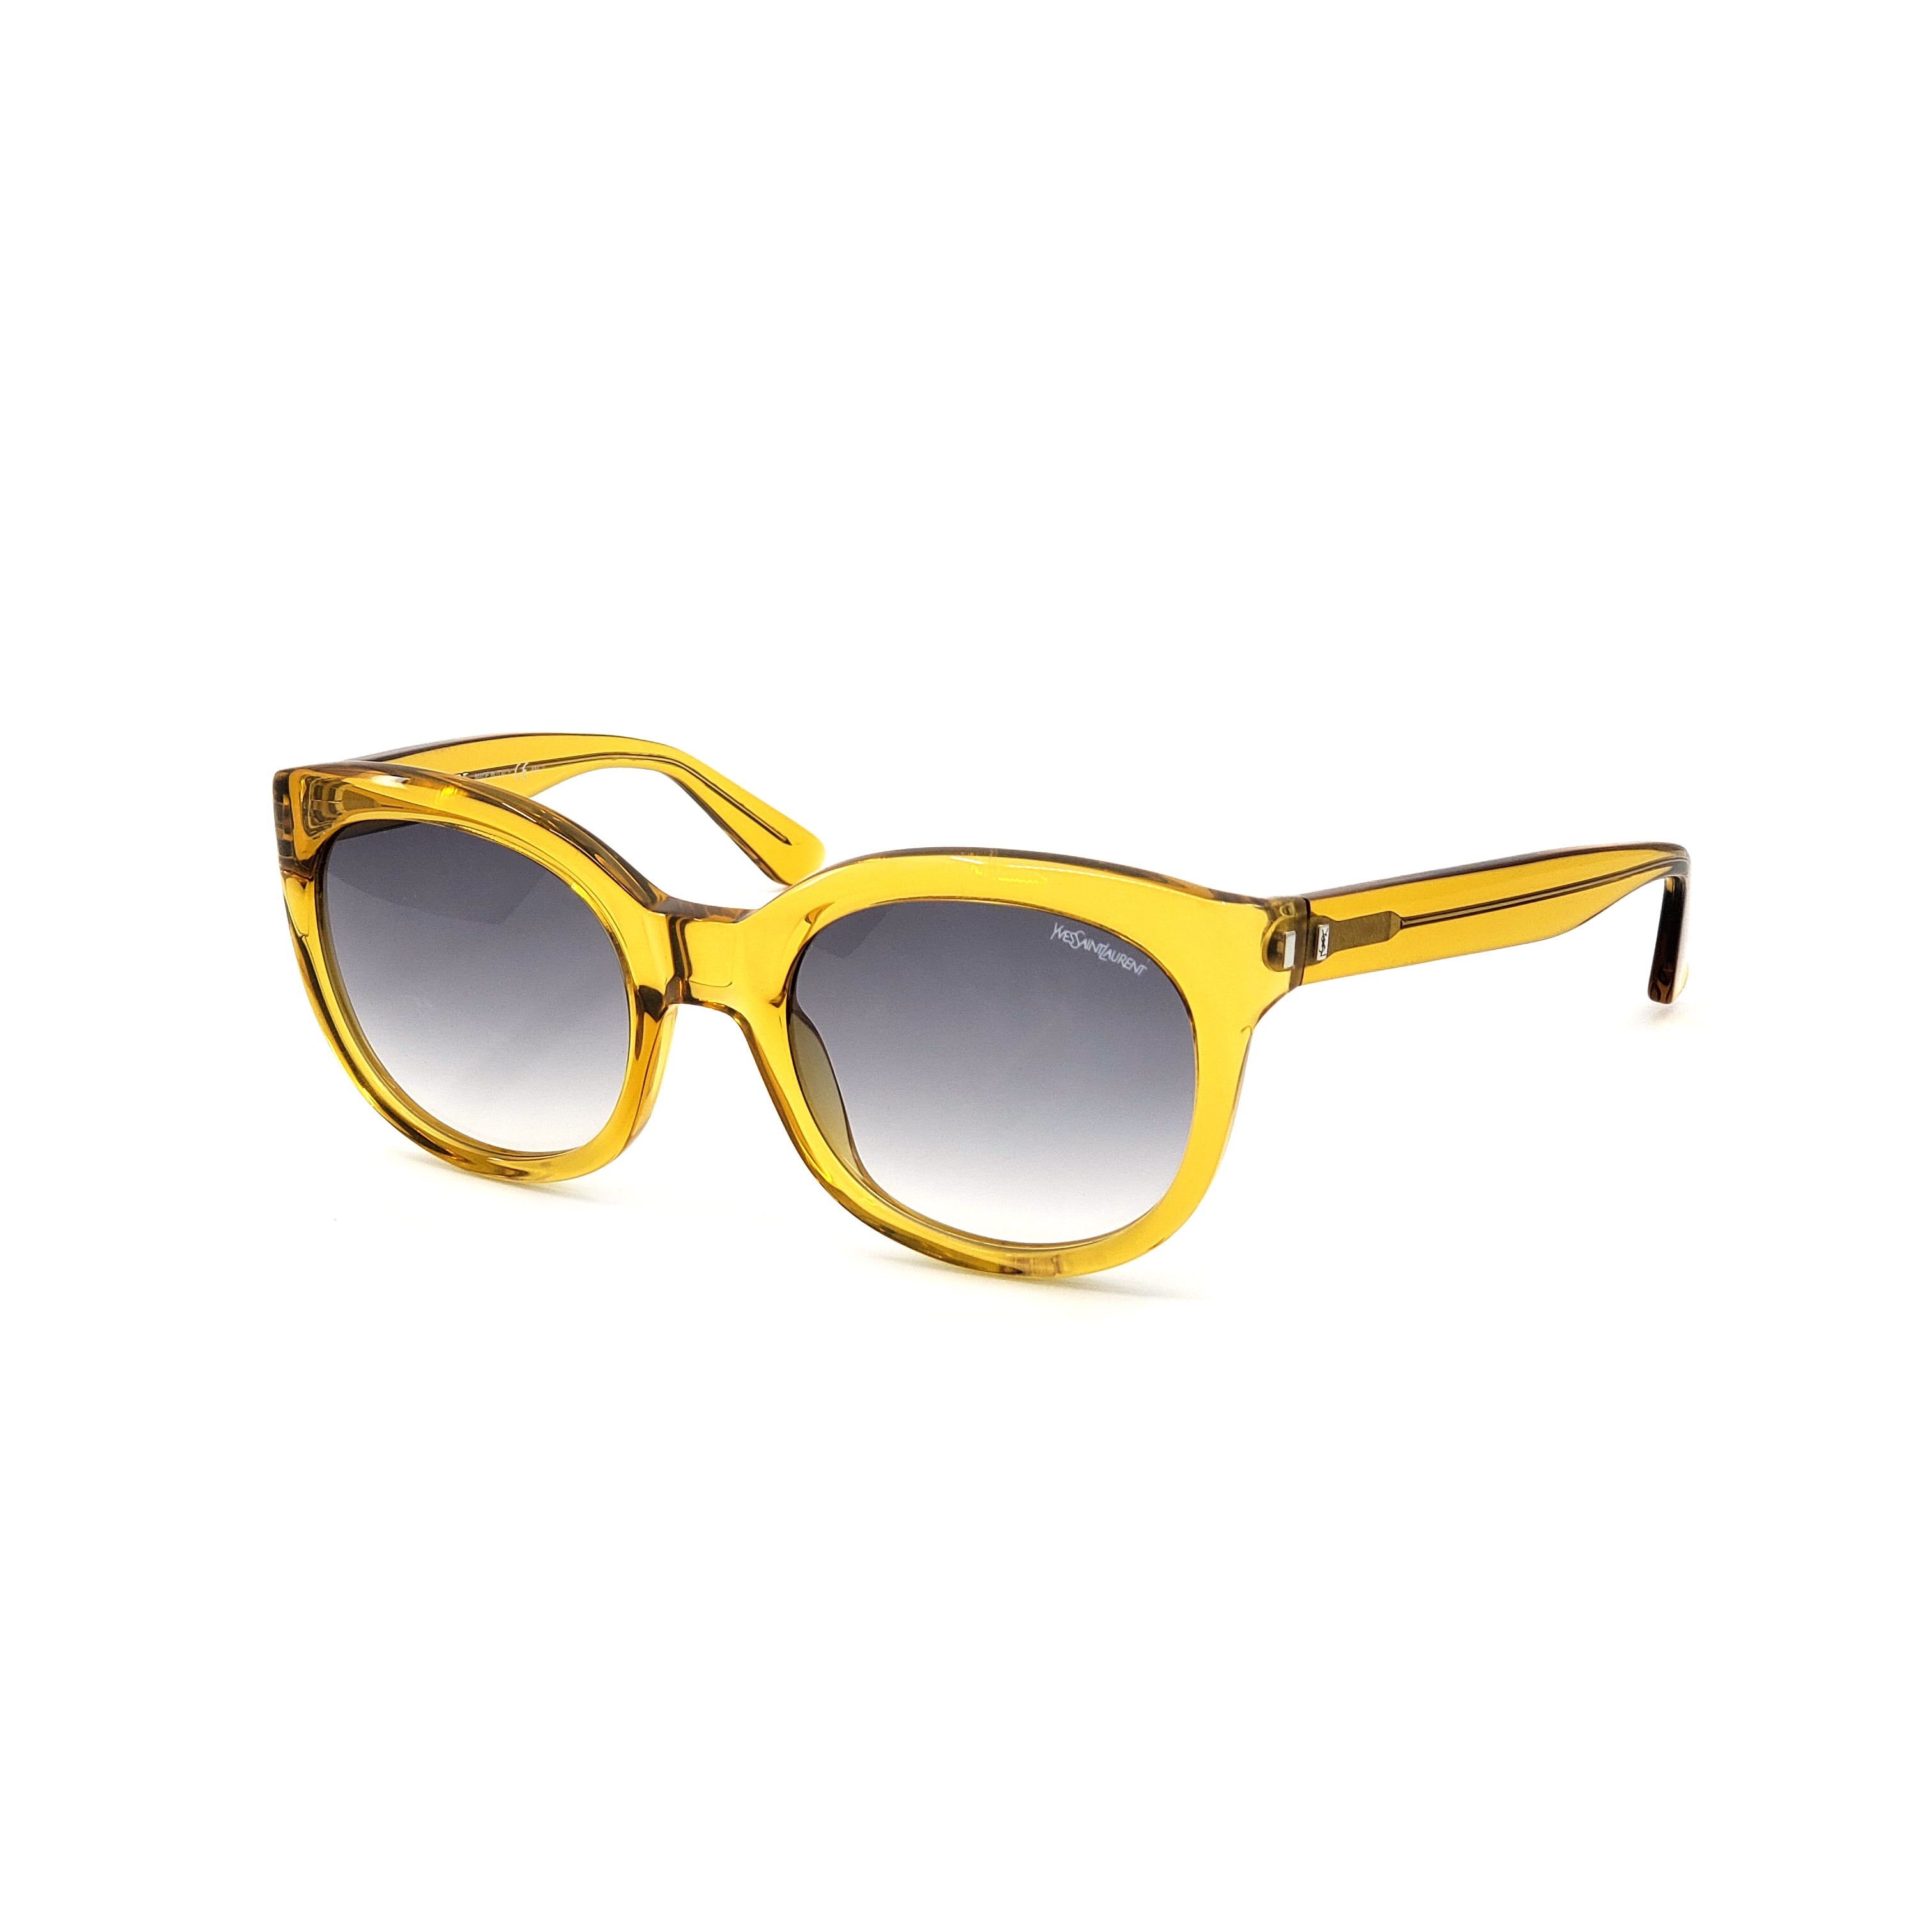 Yves Saint Laurent Sunglasses - YSL6379S-HSF